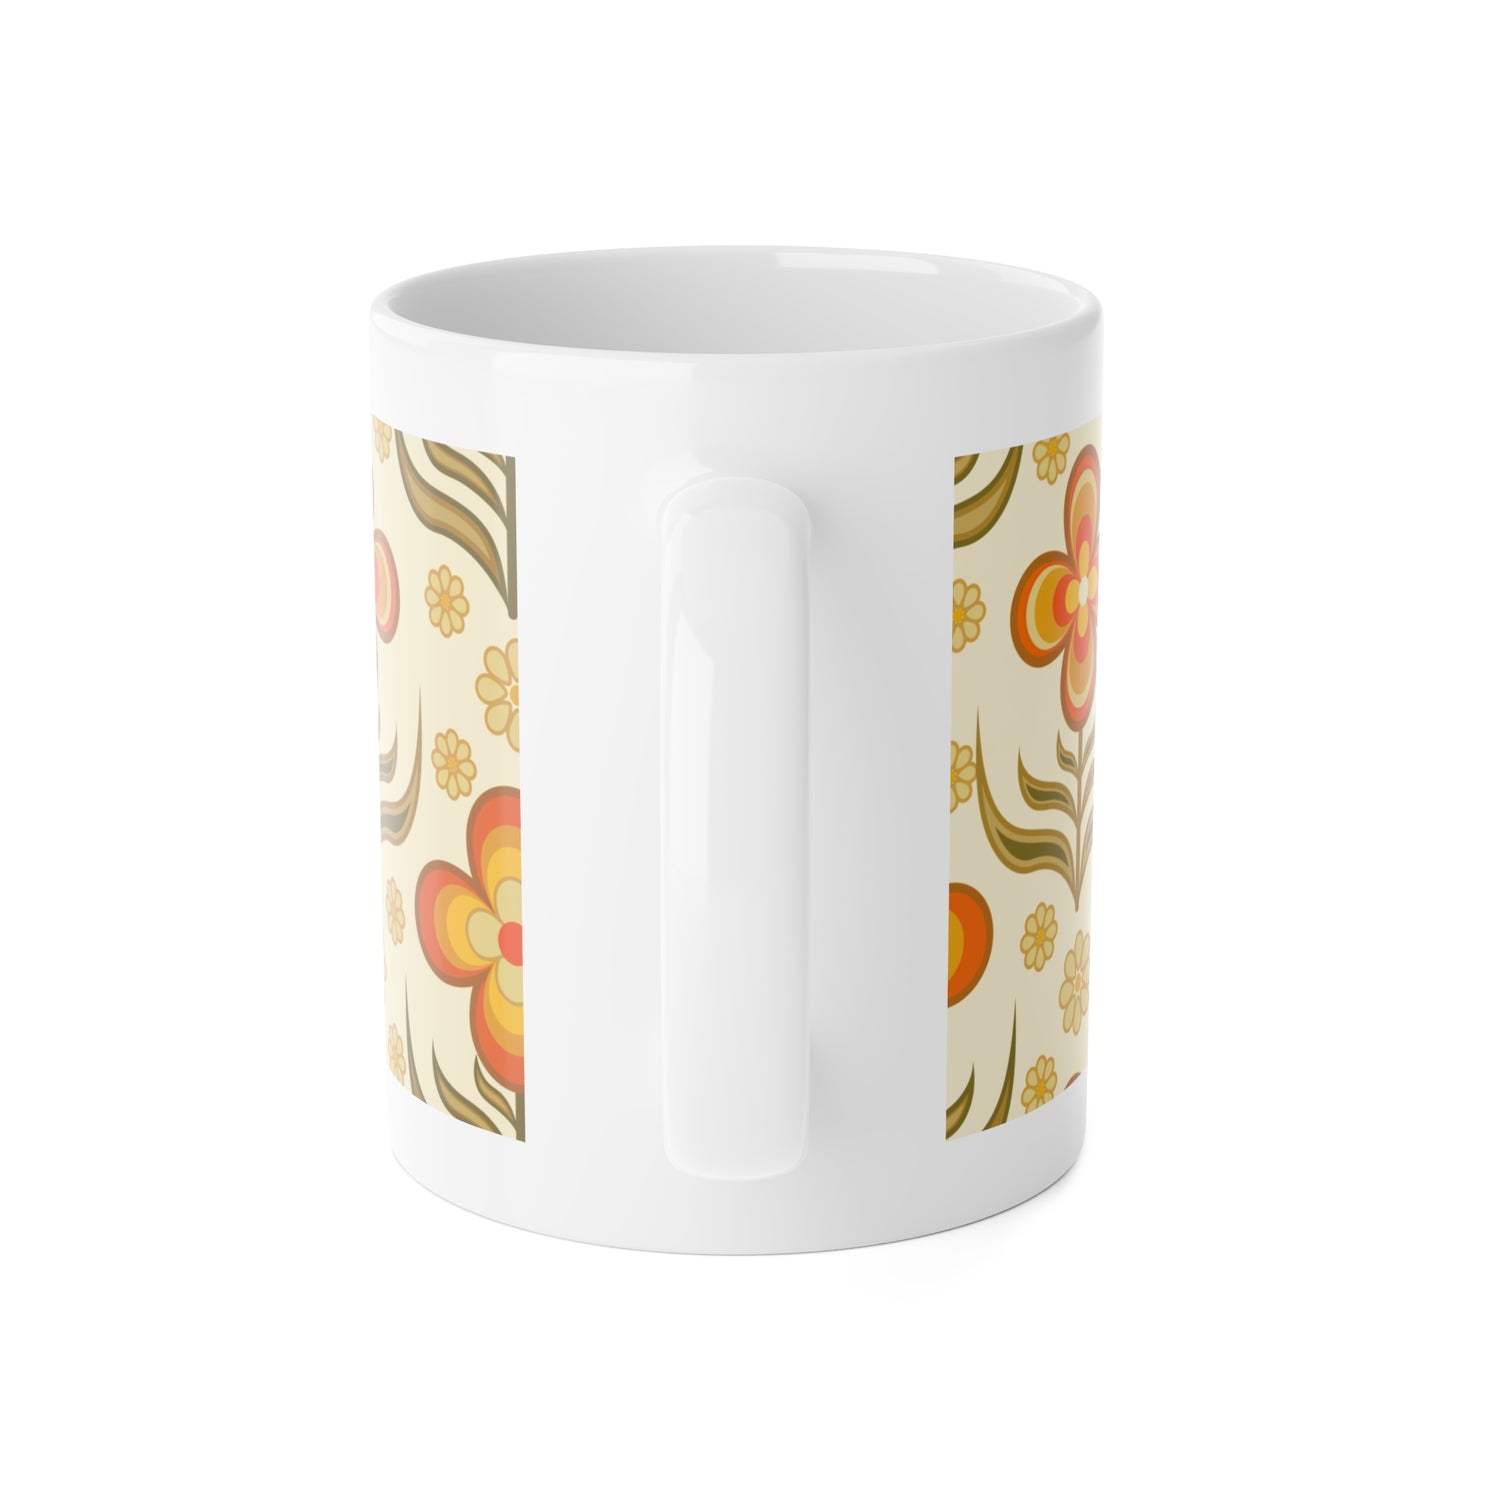 70s Flower Power, Daily Cup of Retro White Ceramic Mug, 11oz